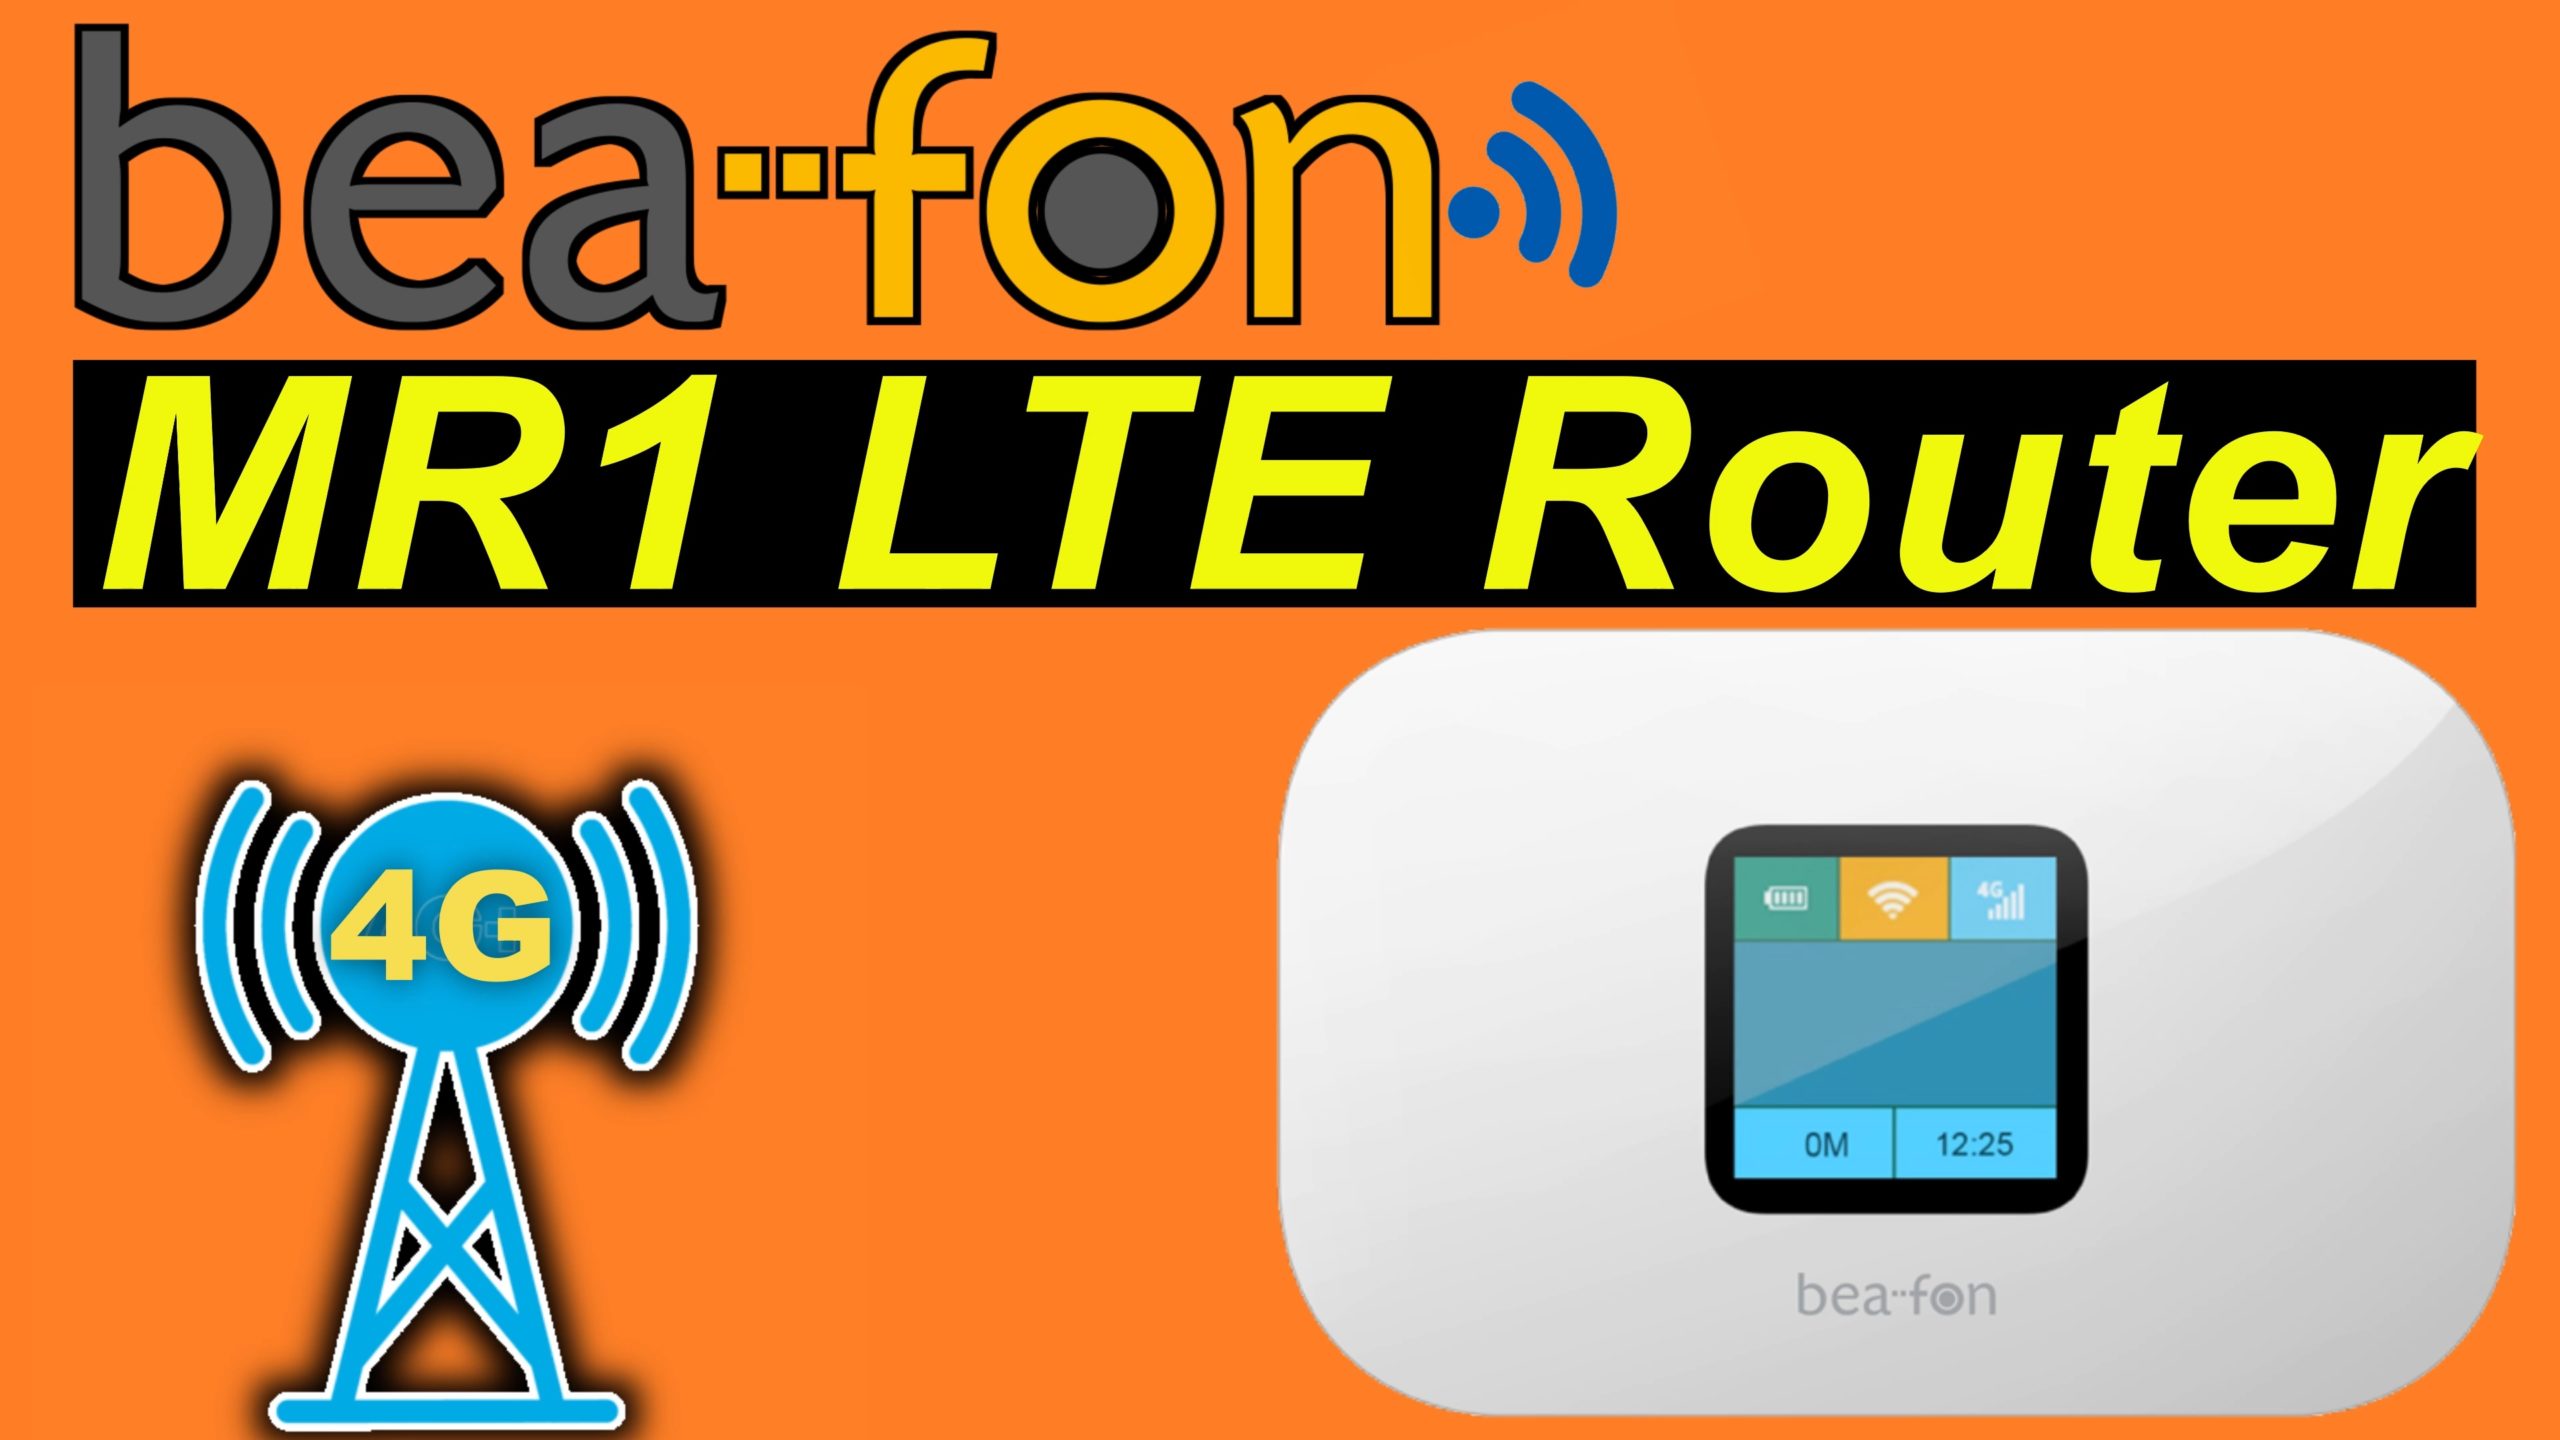 Bea-fon MR1 LTE Router - das Internet immer dabei